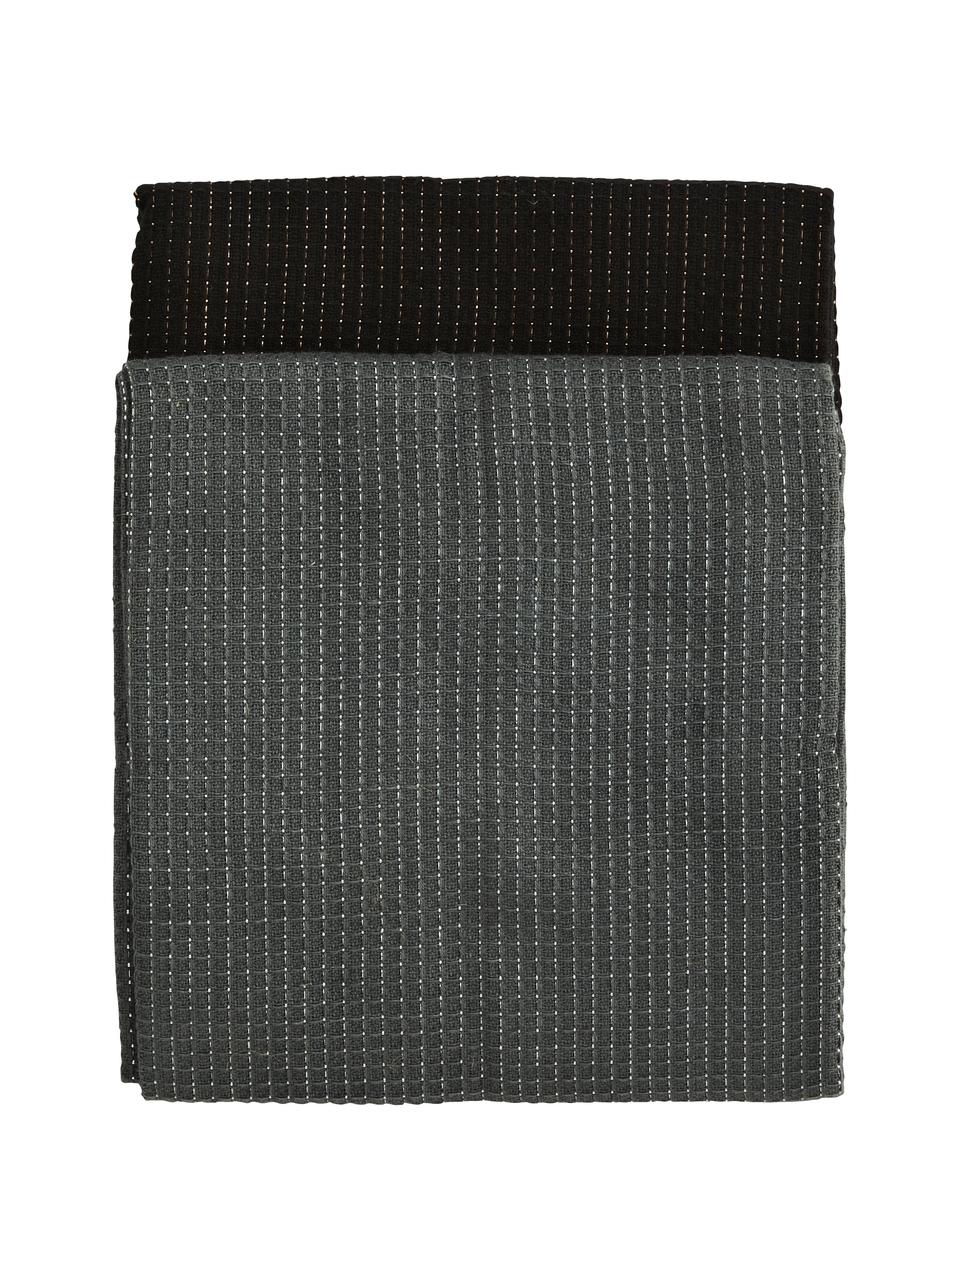 Komplet ręczników kuchennych z bawełny Waffelpiqué, 4 elem., 100% bawełna, nić lureksowa, Ciemny  szary, czarny, S 50 x D 70 cm